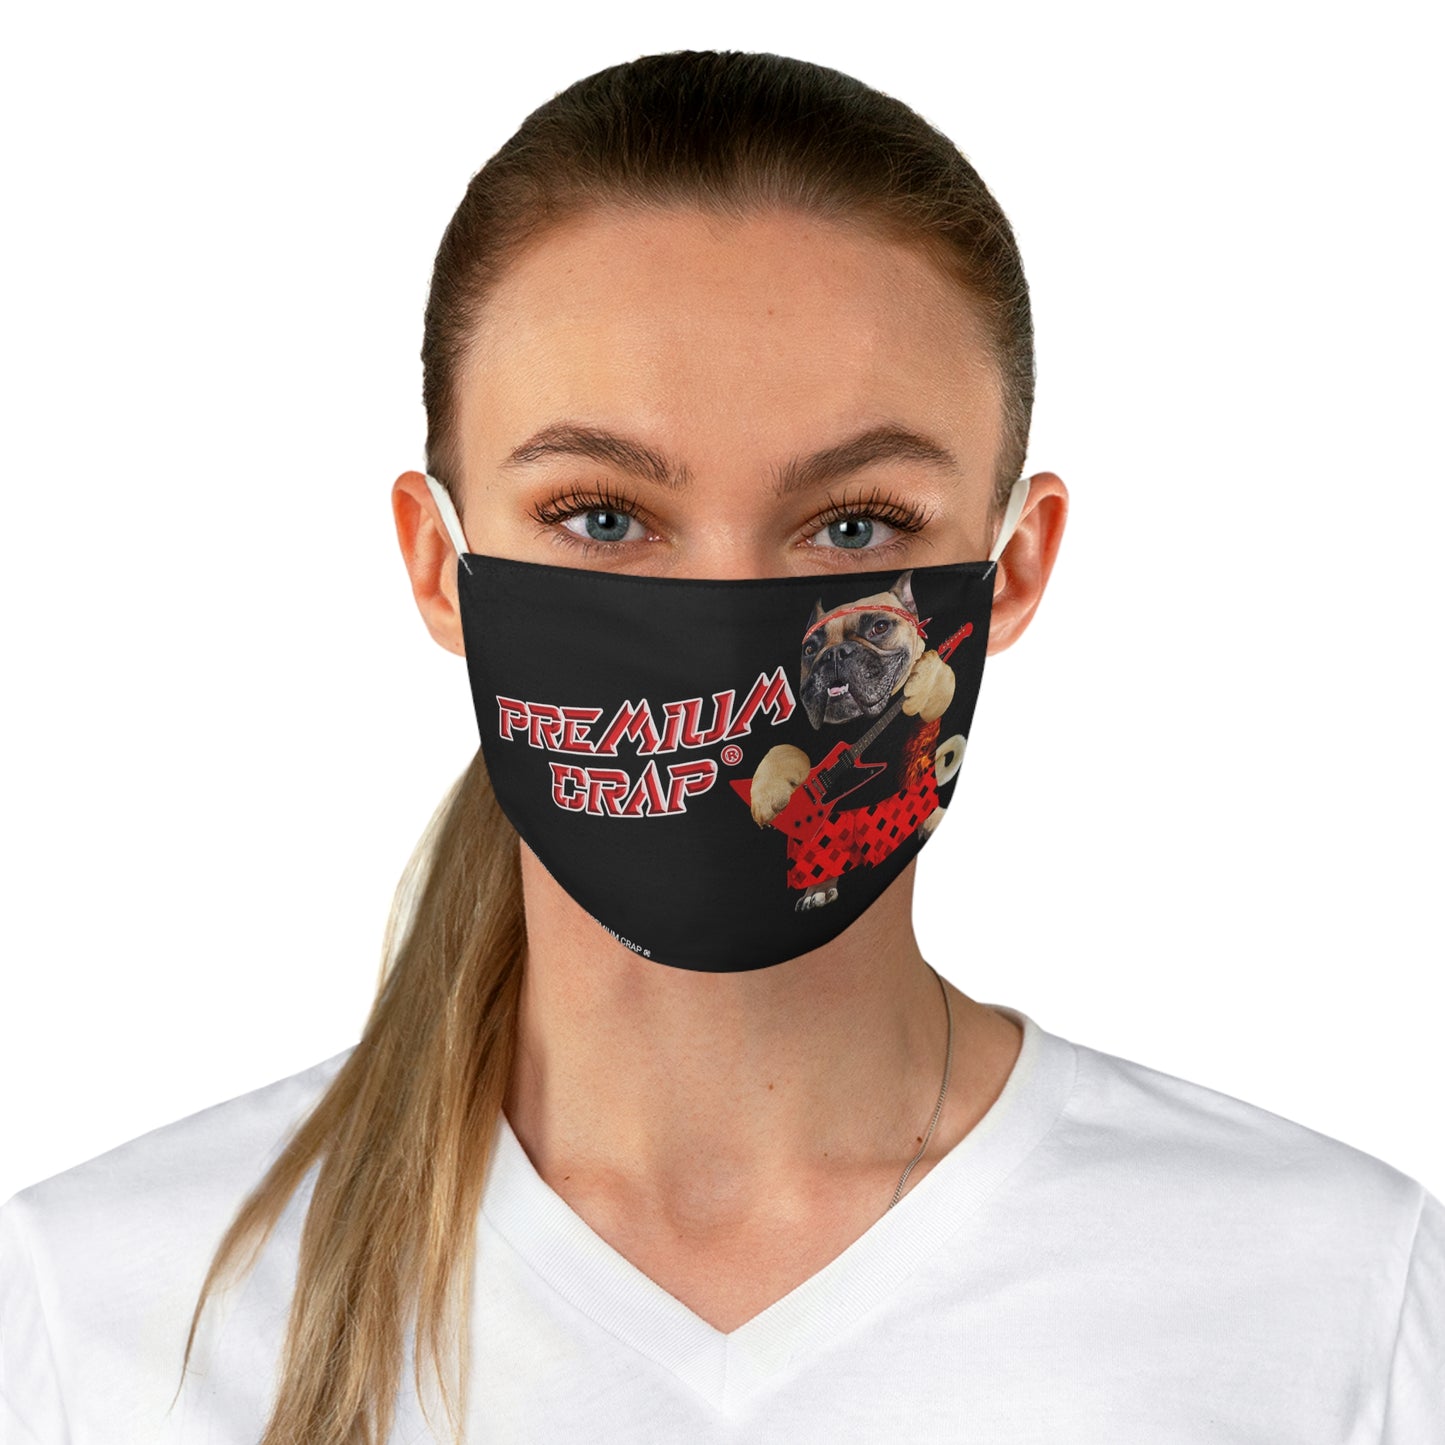 Premium Crap II Fabric Face Mask